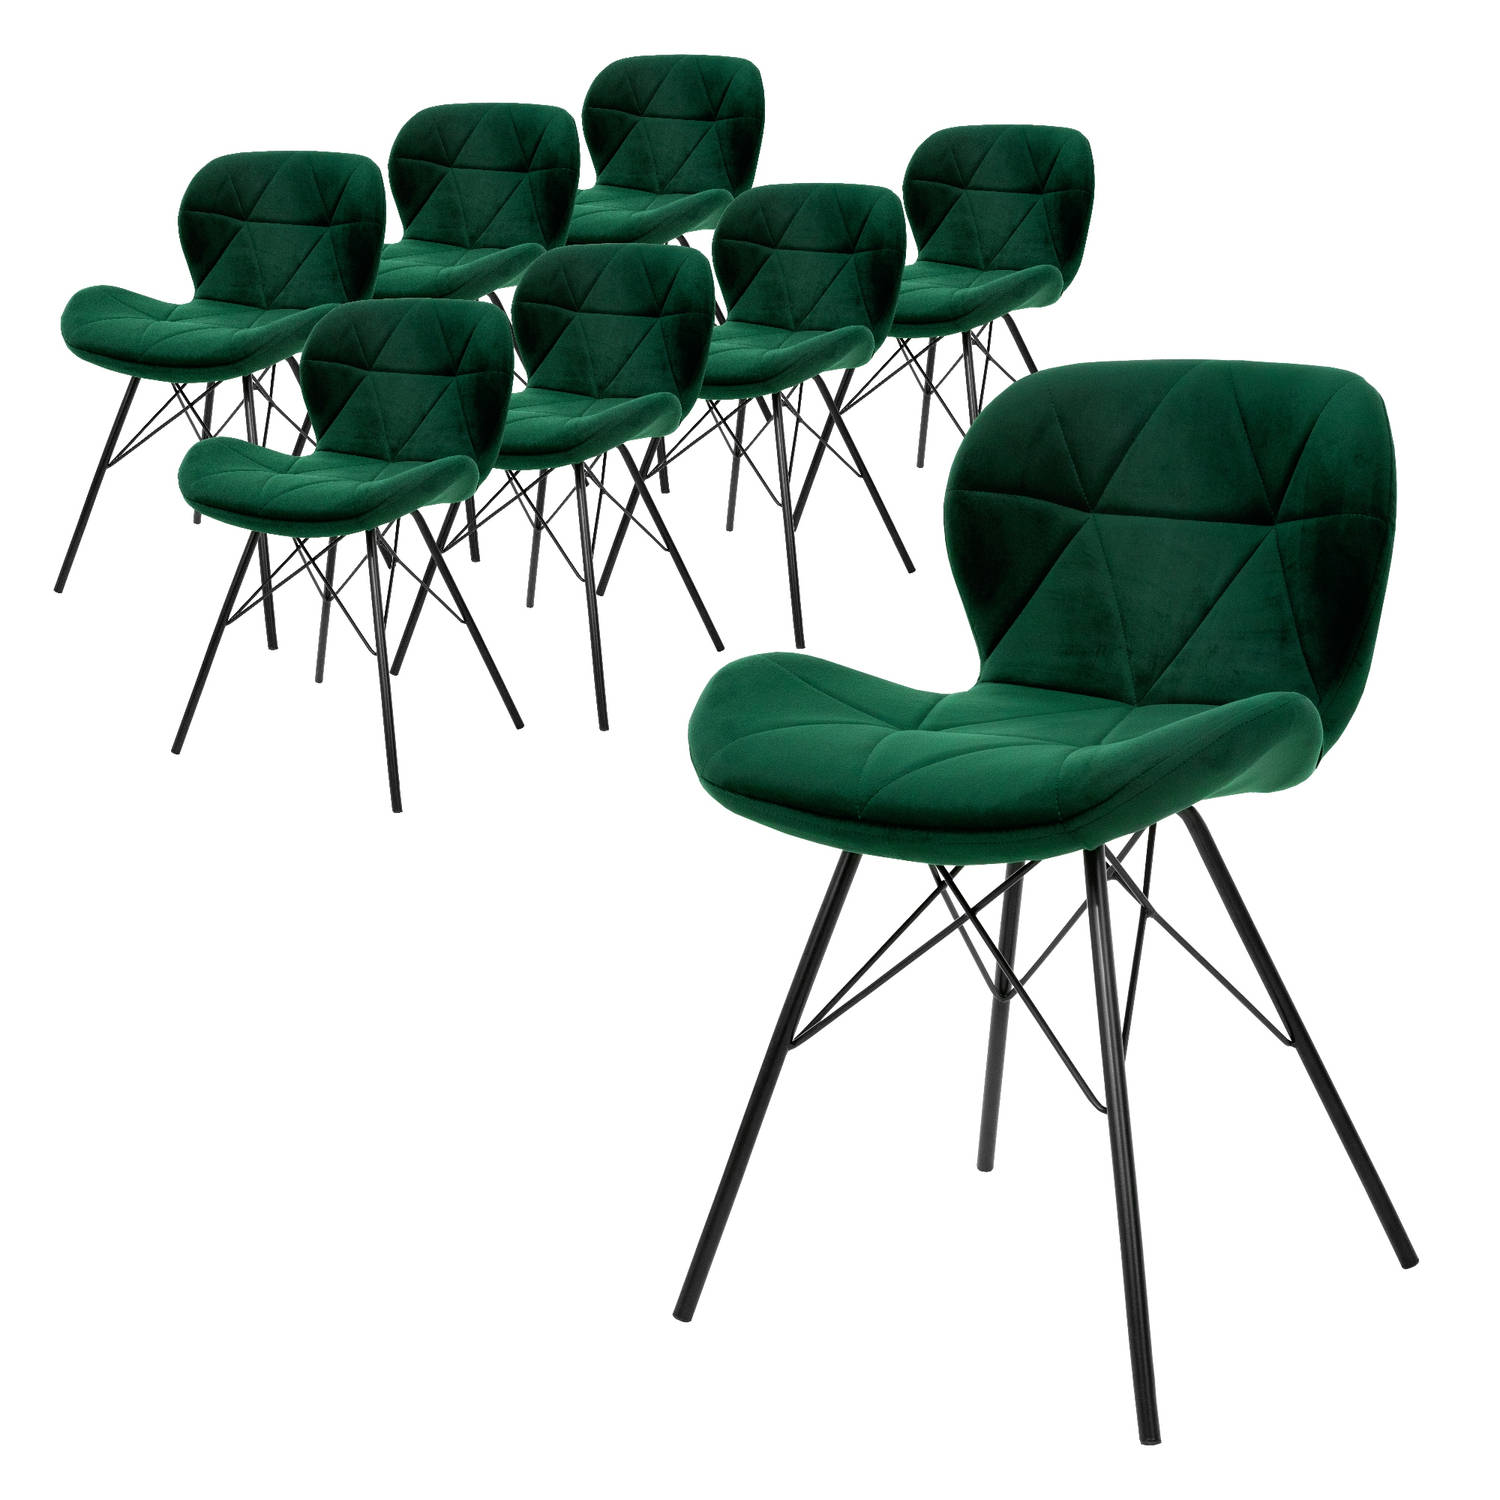 ML-Design set van 8 eetkamerstoelen met rugleuning, donkergroen, keukenstoel met fluwelen bekleding, gestoffeerde stoel met metalen poten, ergonomische stoel voor eettafel woonkame